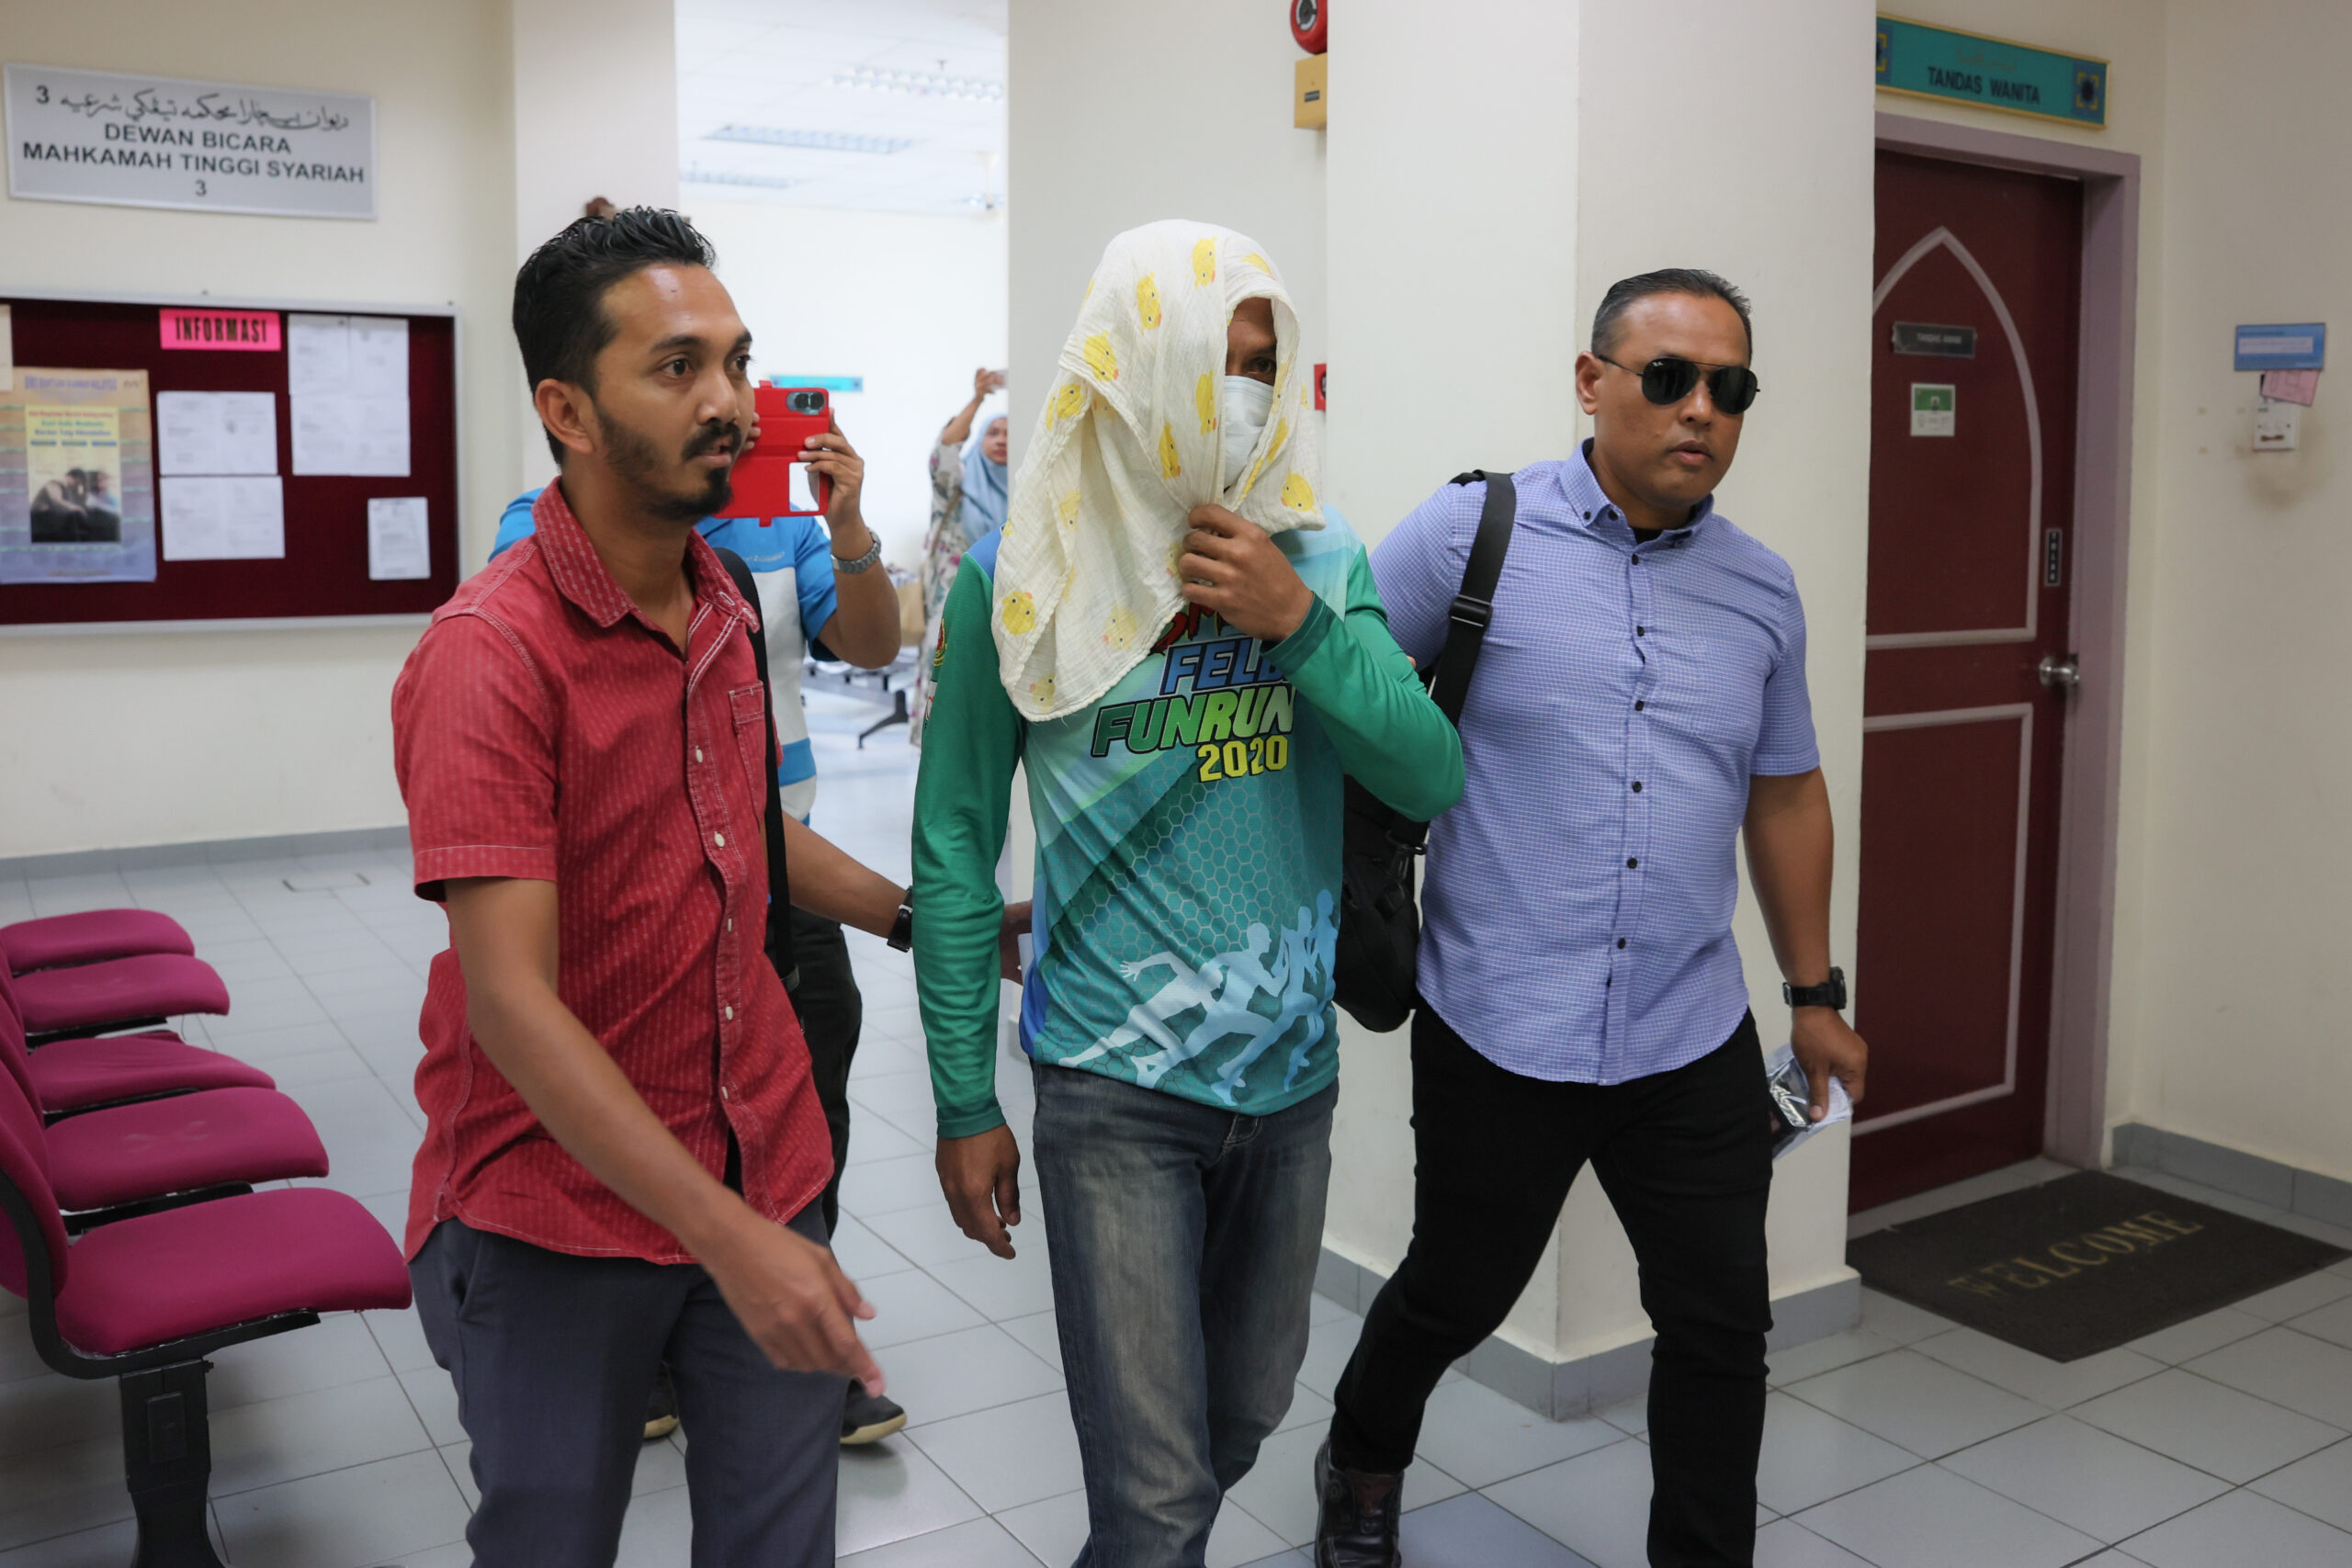 Buruh binaan individu pertama di Terengganu dihukum sebat kerana berkhalwat